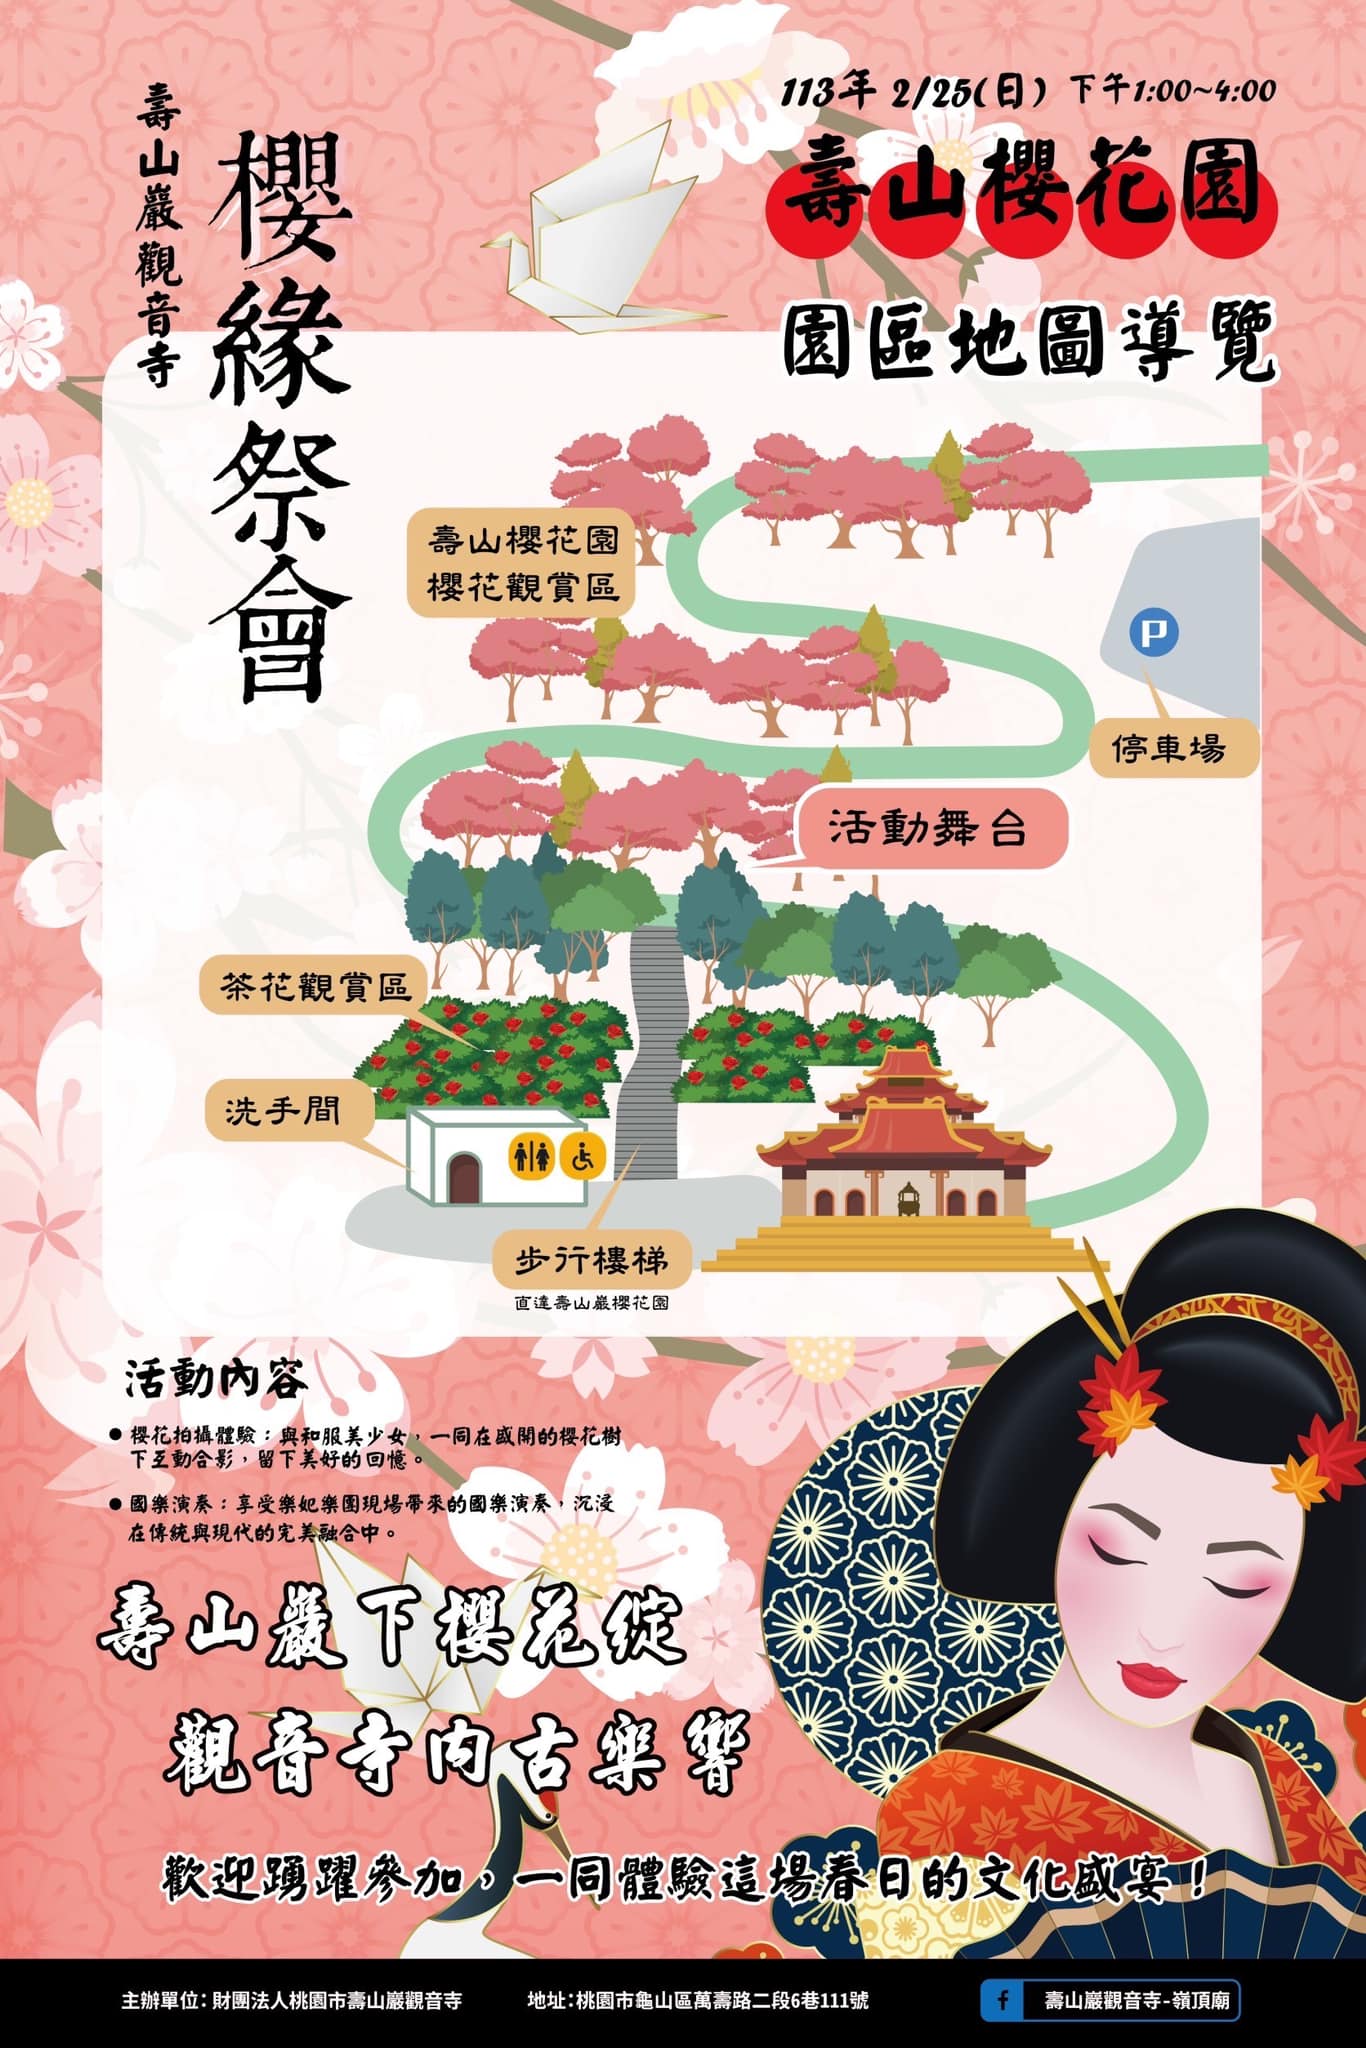 桃園【壽山櫻花園—櫻緣祭會】國樂表演、和服、模特兒互動